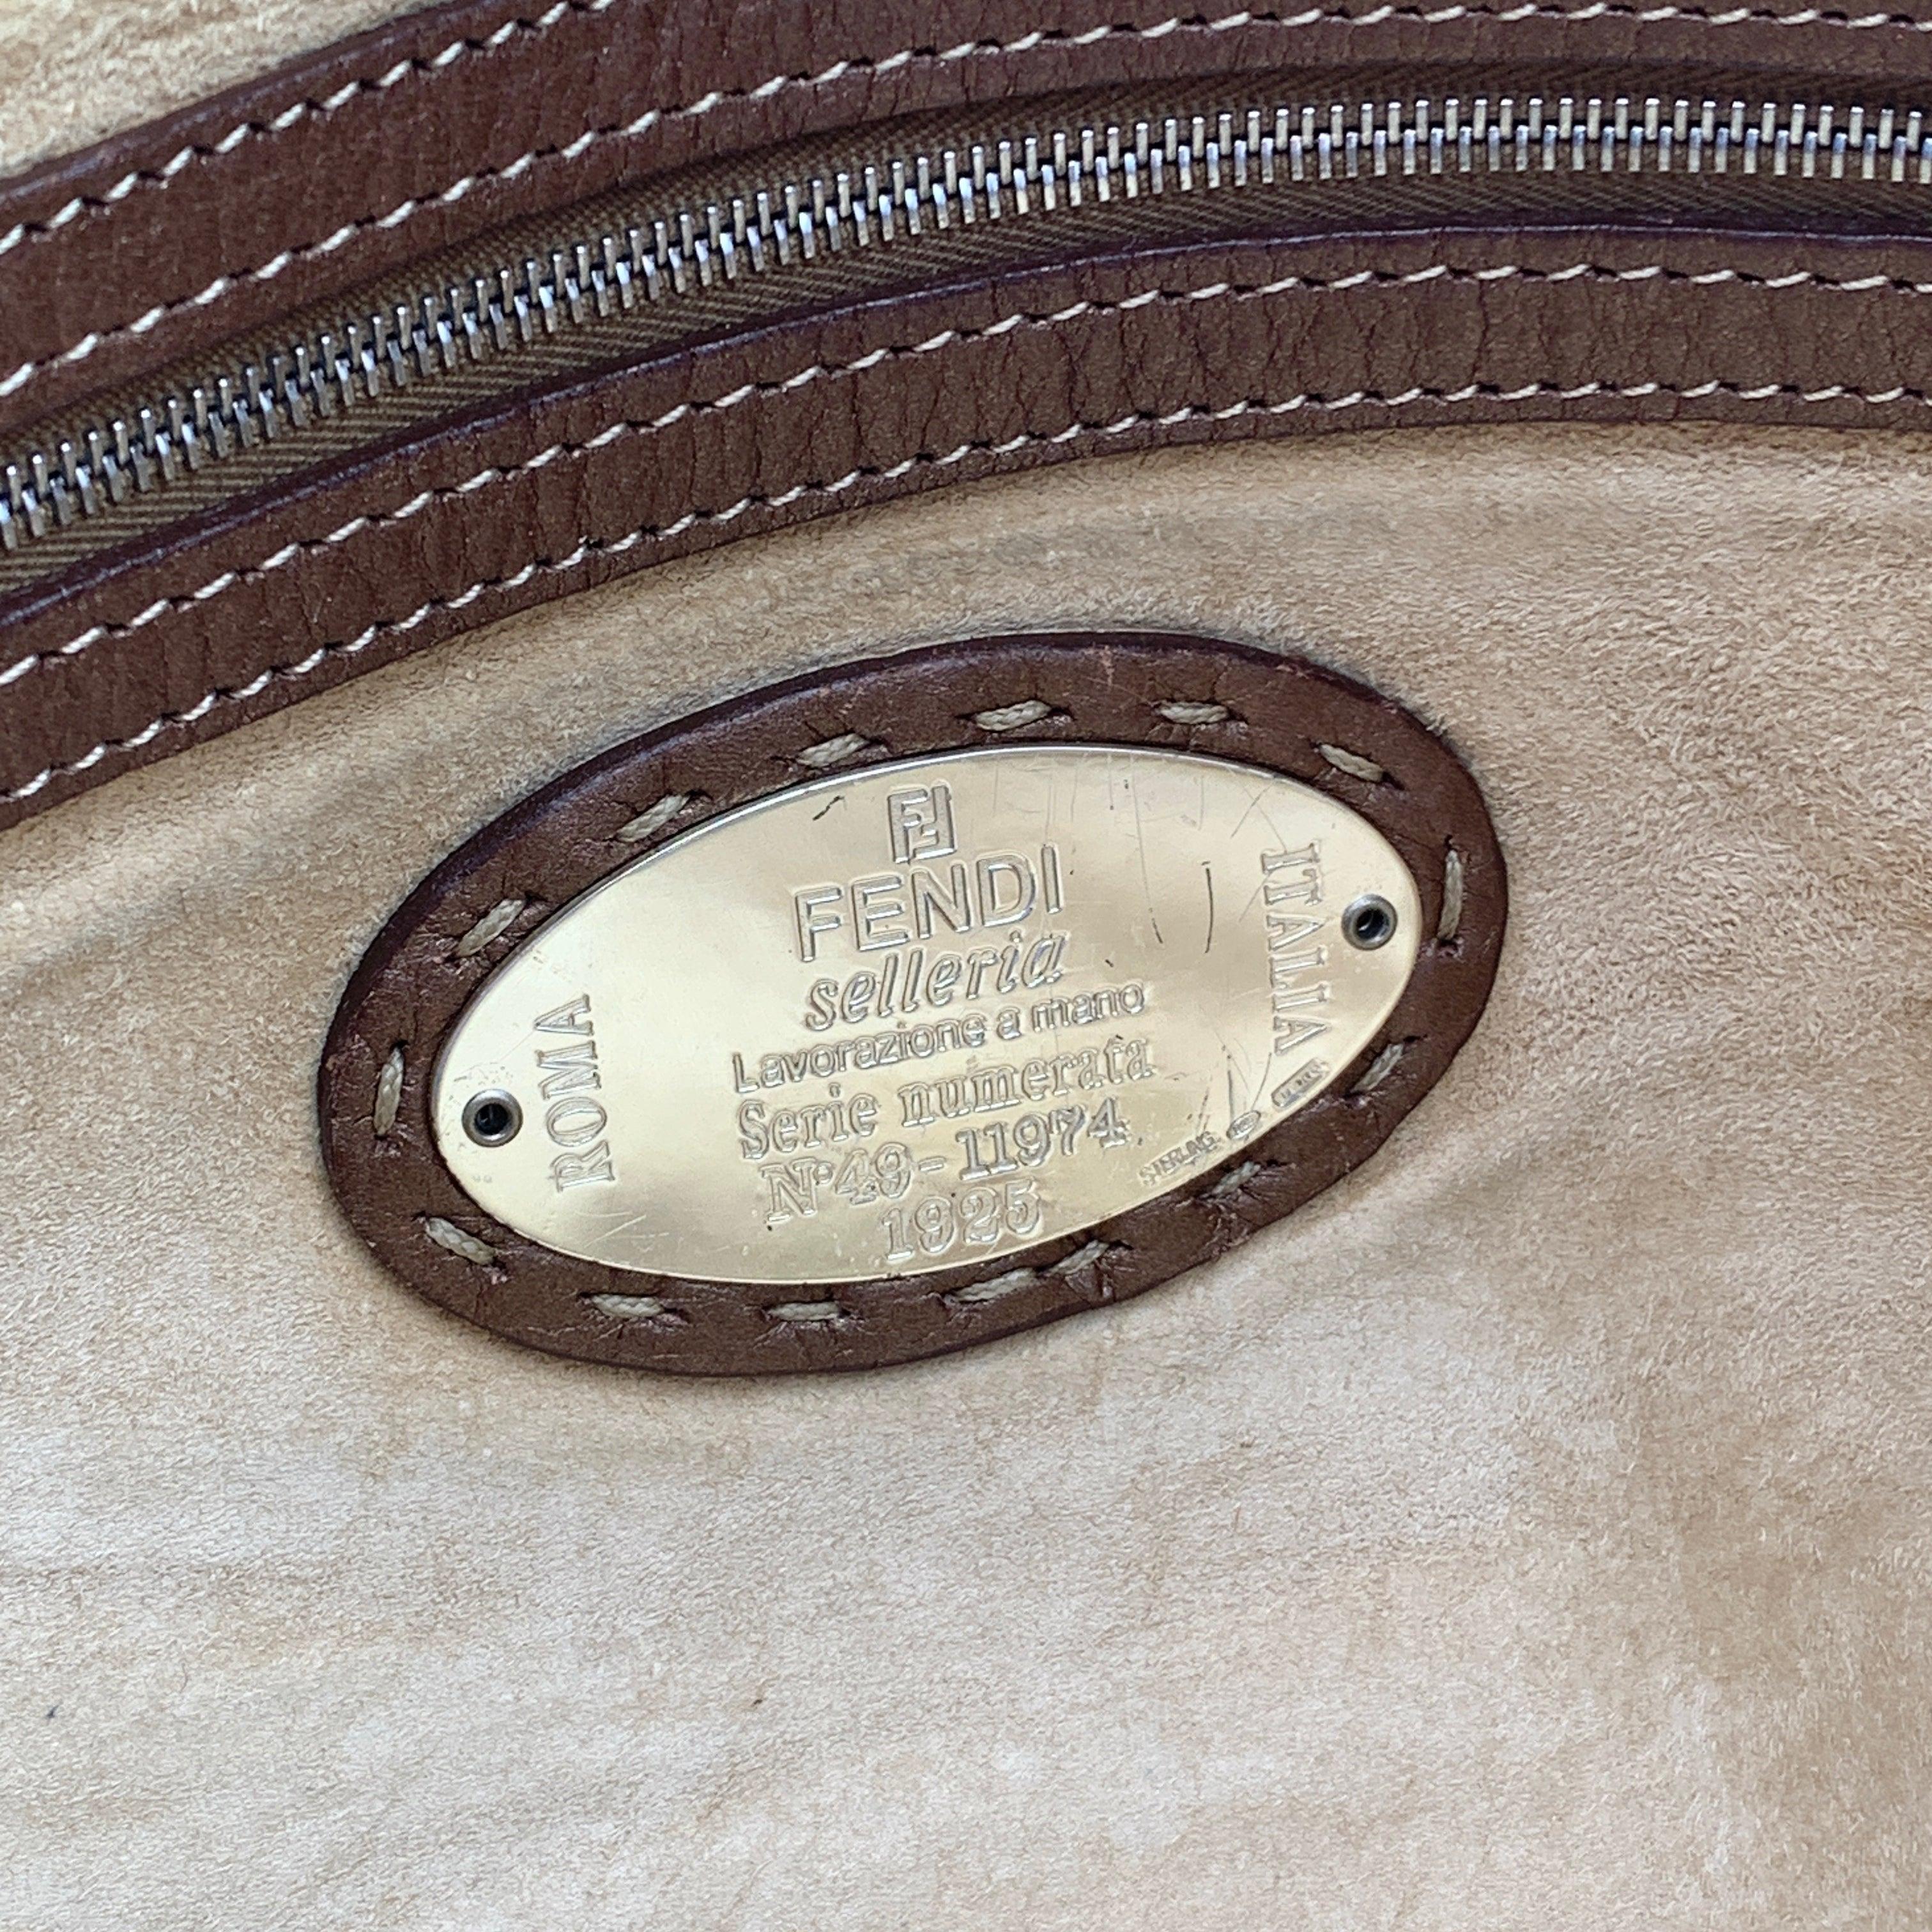 Fendi Selleria Brown Metallic Leather Weekender Bag Satchel For Sale 2